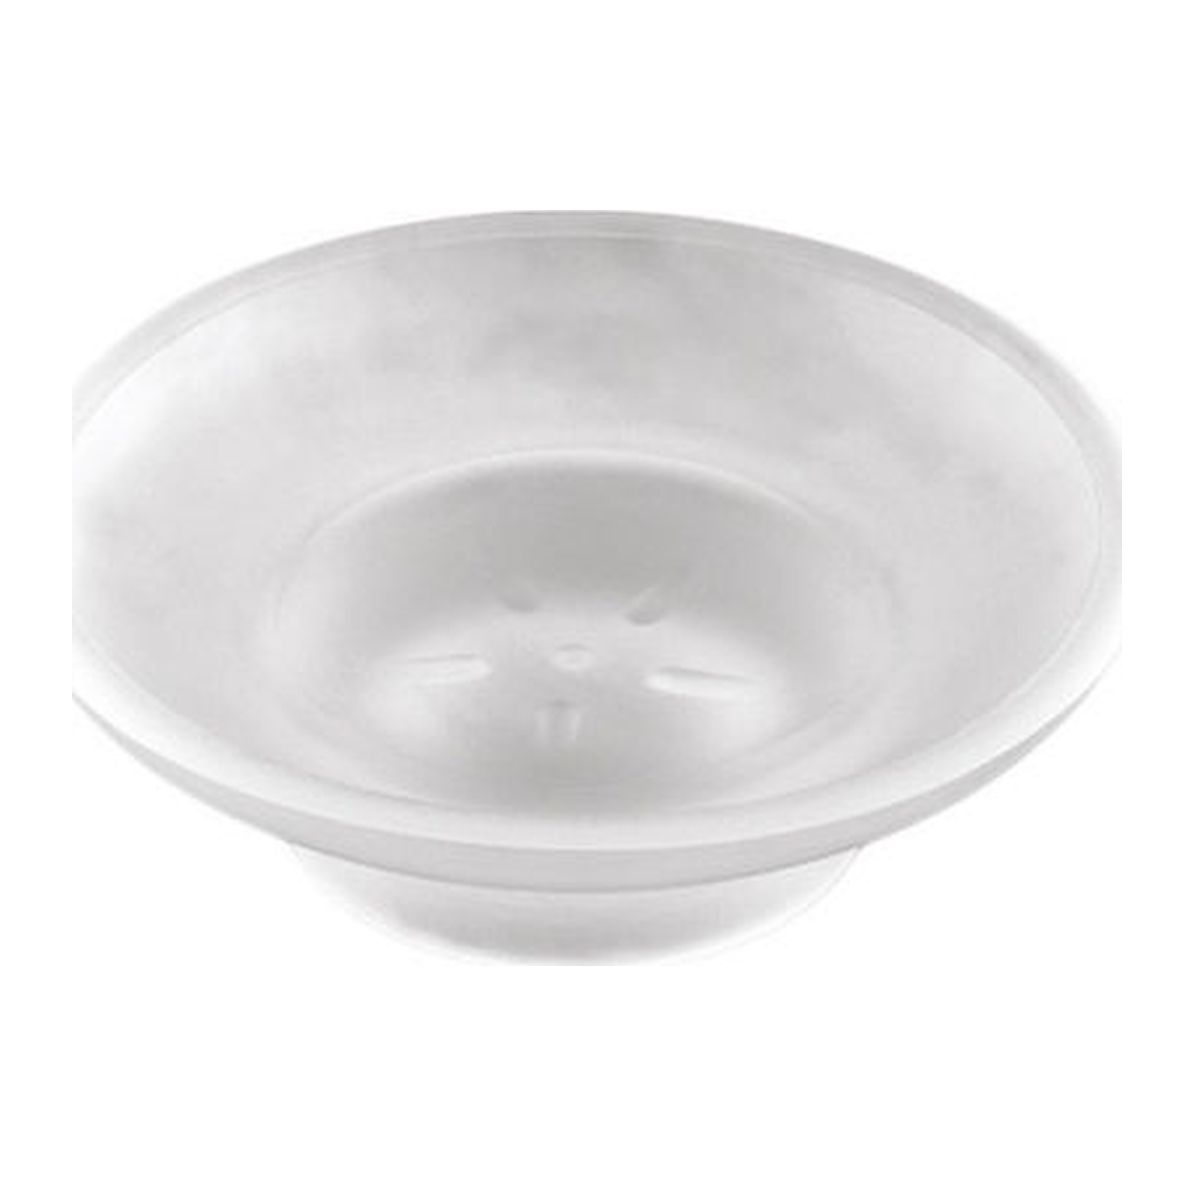 Πιάτο Ματ Mercury 24-7236 Novo Sanitary Ware Viospiral 